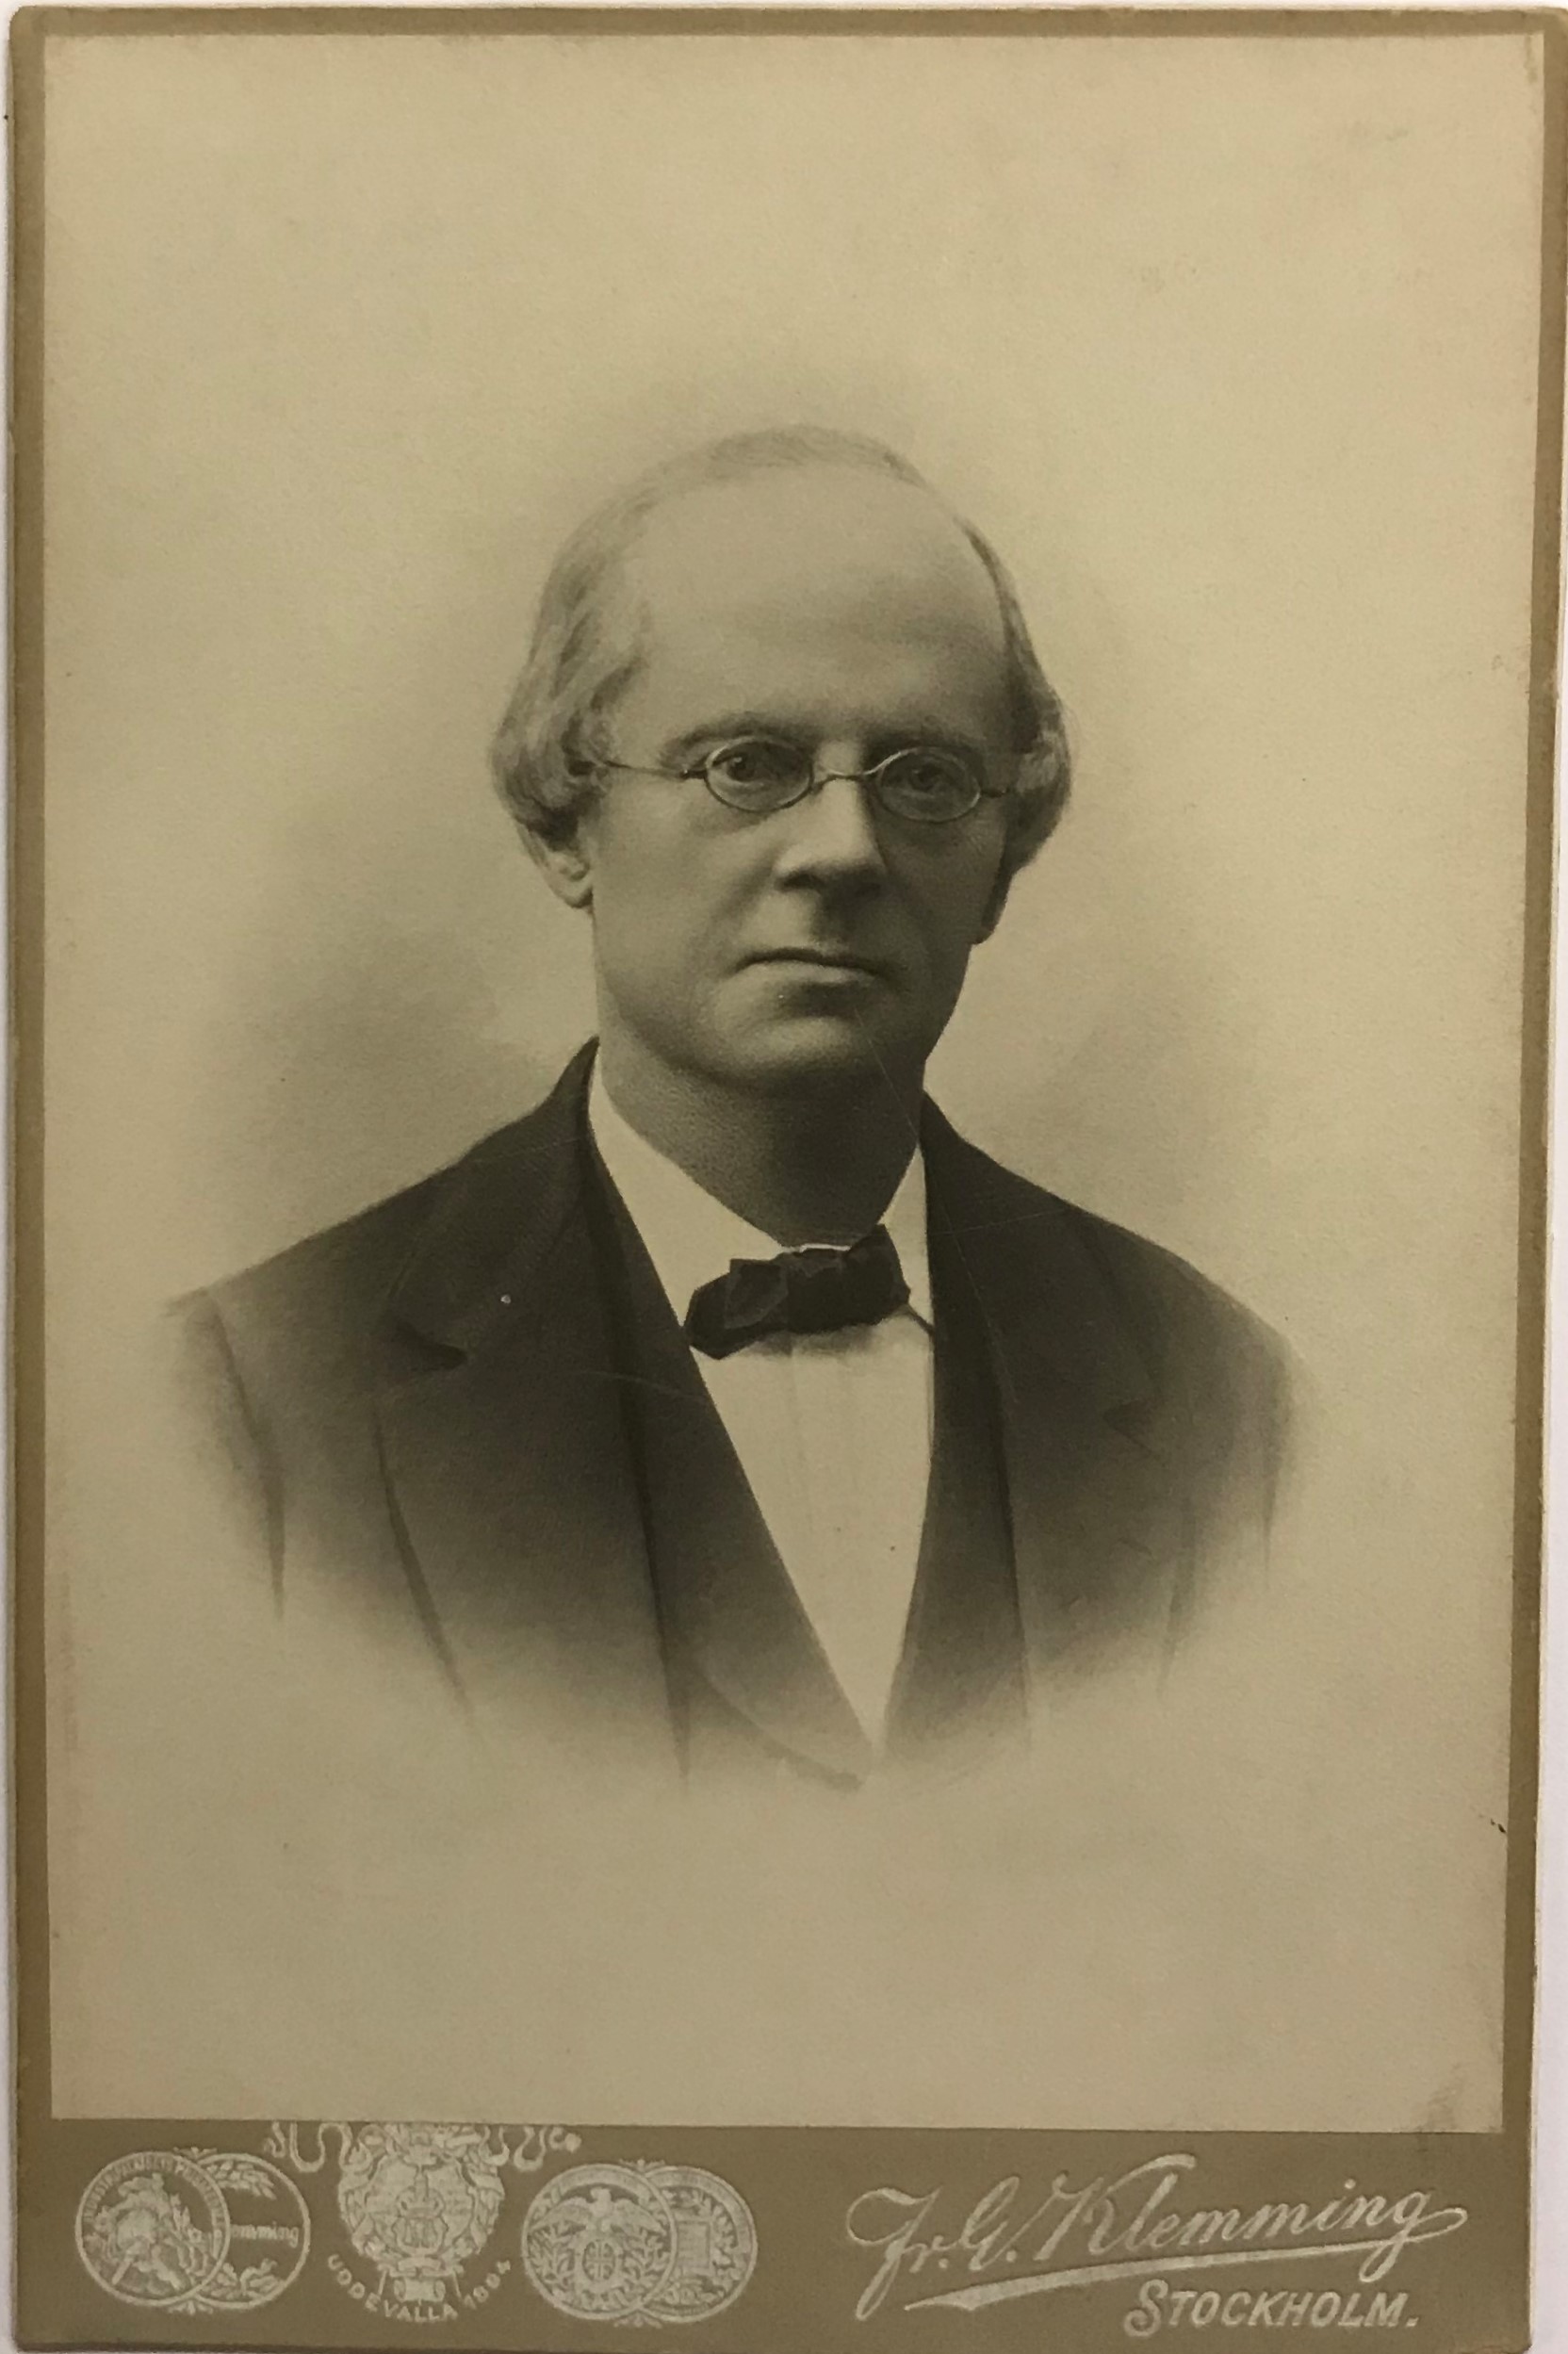 Fotografi av en allvarlig man med hög panna och runda små glasögon.